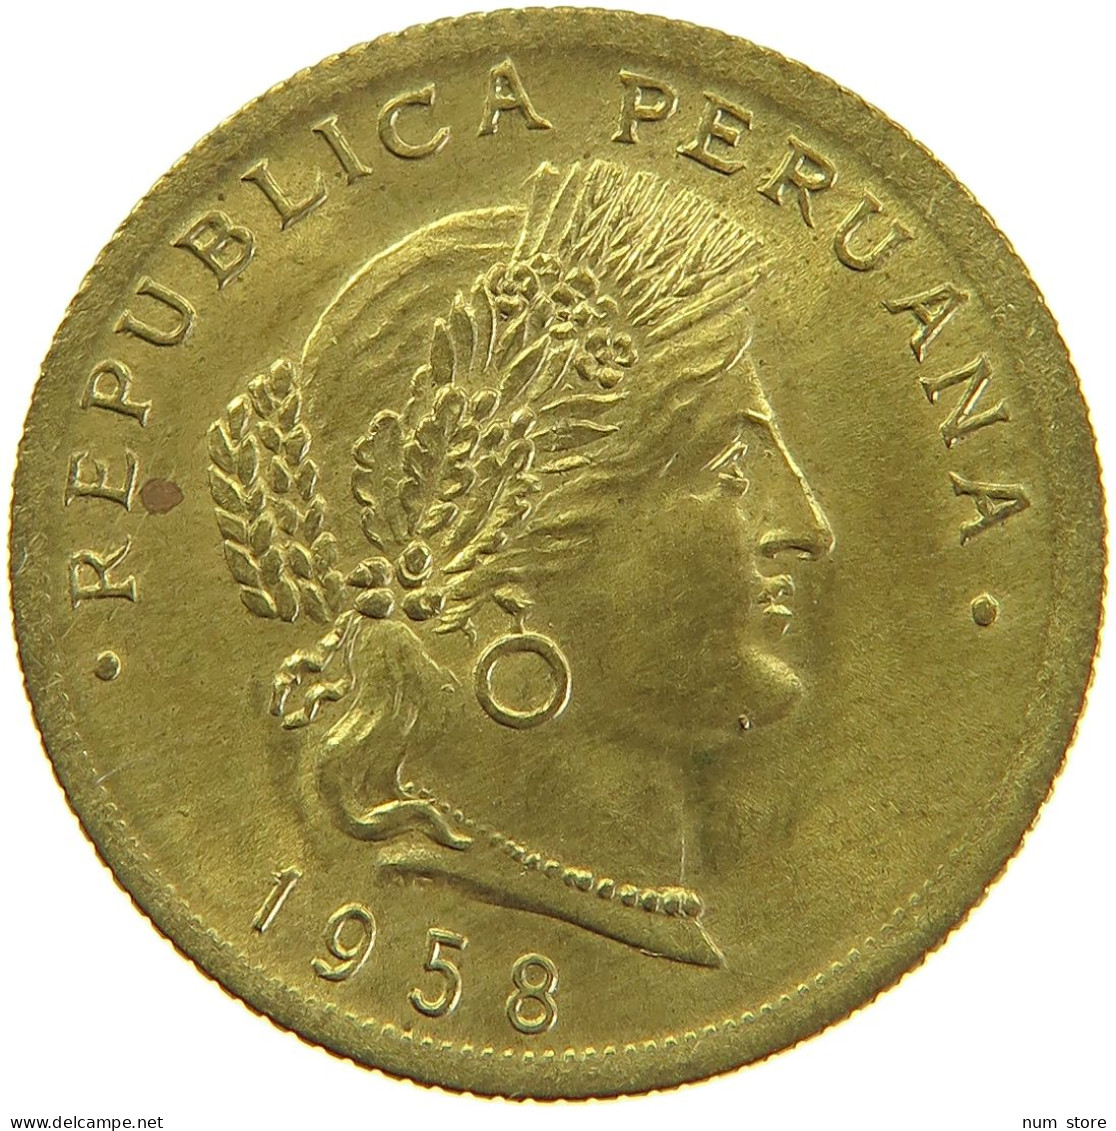 PERU 20 CENTAVOS 1958 UNC #t030 0099 - Peru